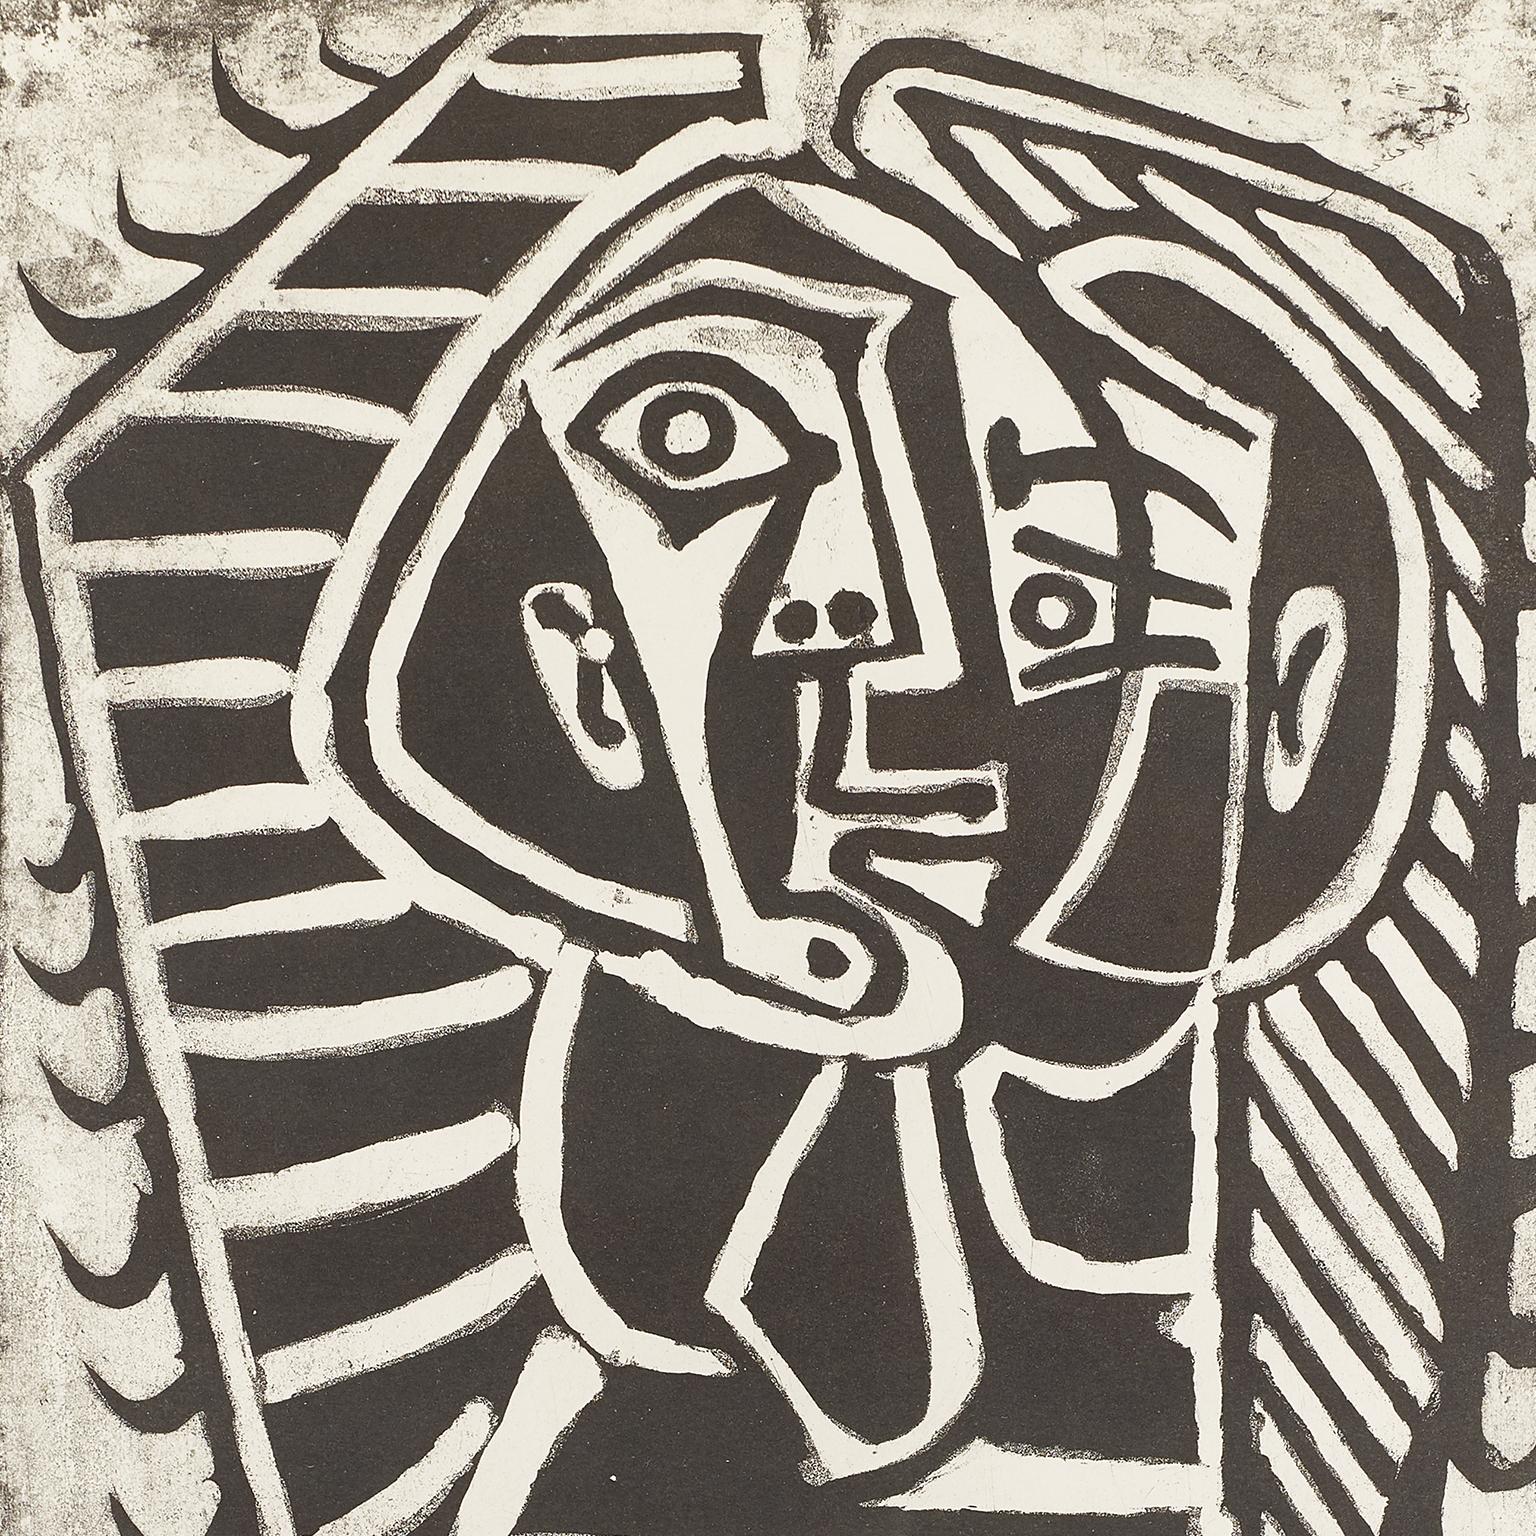 13eme salon de mai 1957 . musée d'art moderne de Paris .
tirage papier . affiche répertoriée dans le catalogue de s affiche de Picasso .
Art-C.C sous le numéro  114 . provenance Mourlot éditeur .